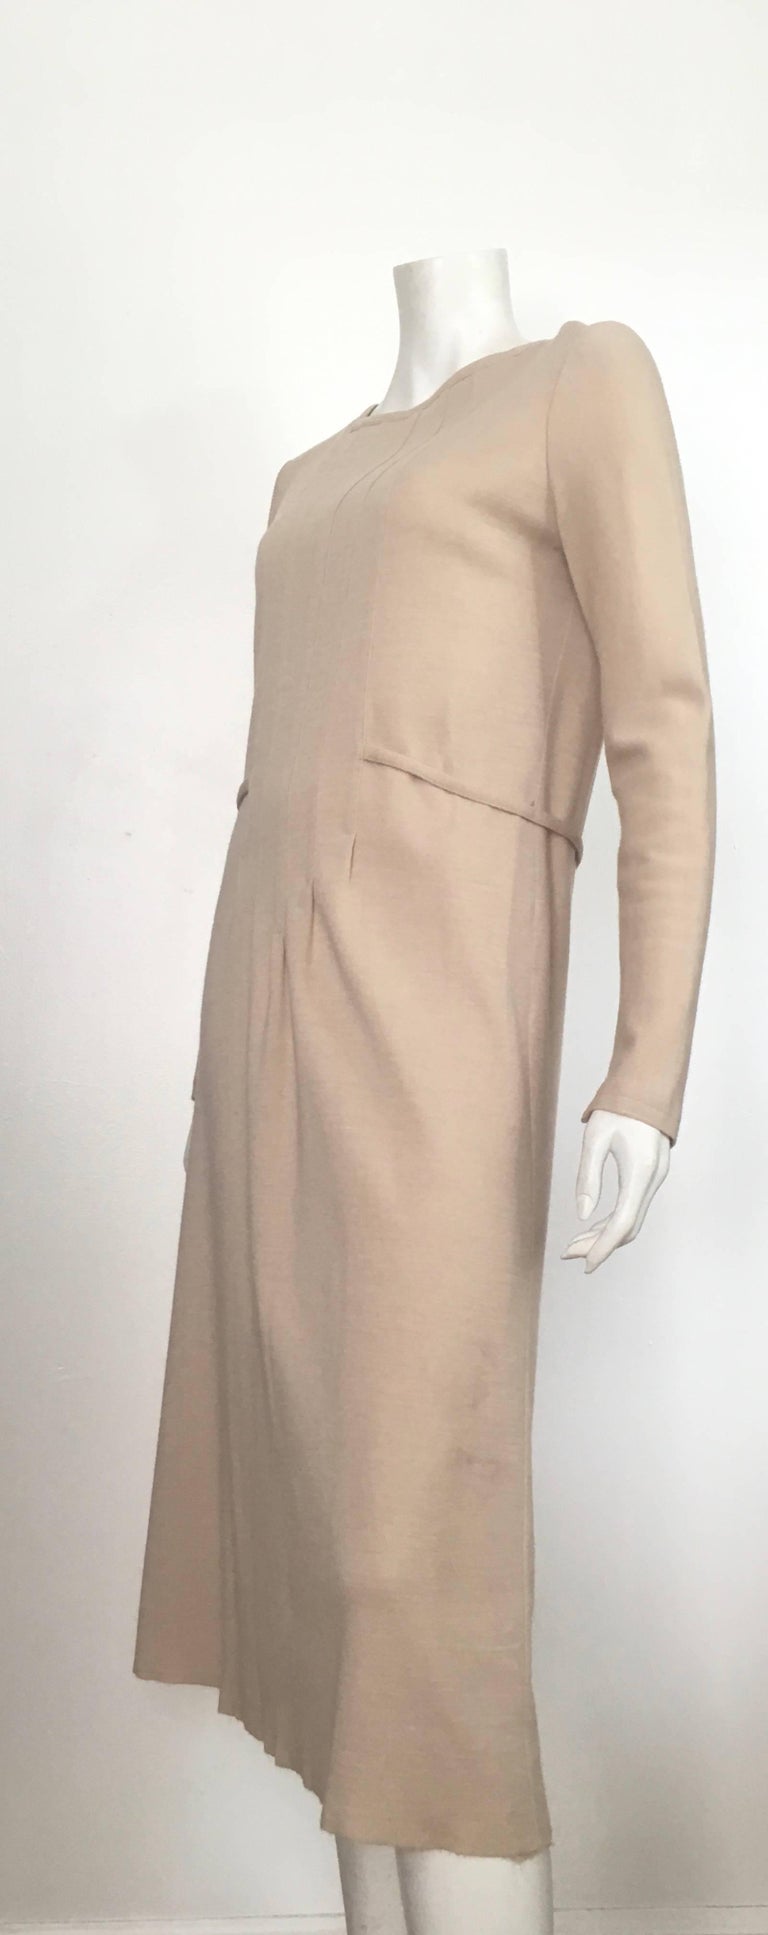 Geoffrey Beene Boutique 1970s Wool Knit Tan Long Sleeve Dress Size 8 ...